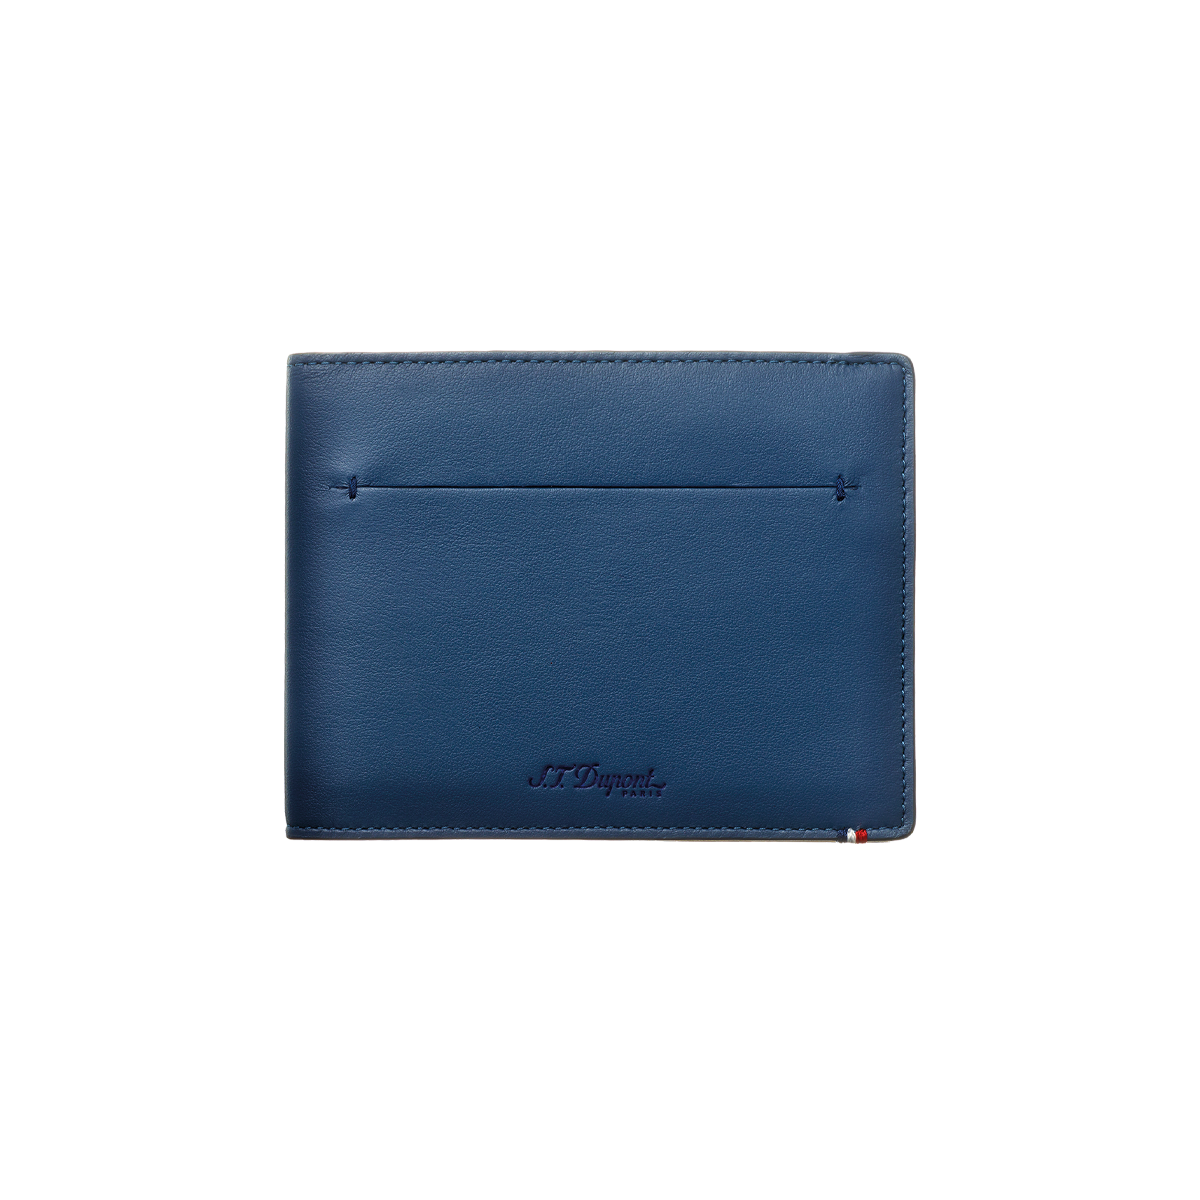 Портмоне Line D Slim 184300 Цвет Синий Гладкая кожа, семь отделений для кредитных карт | S.T. Dupont